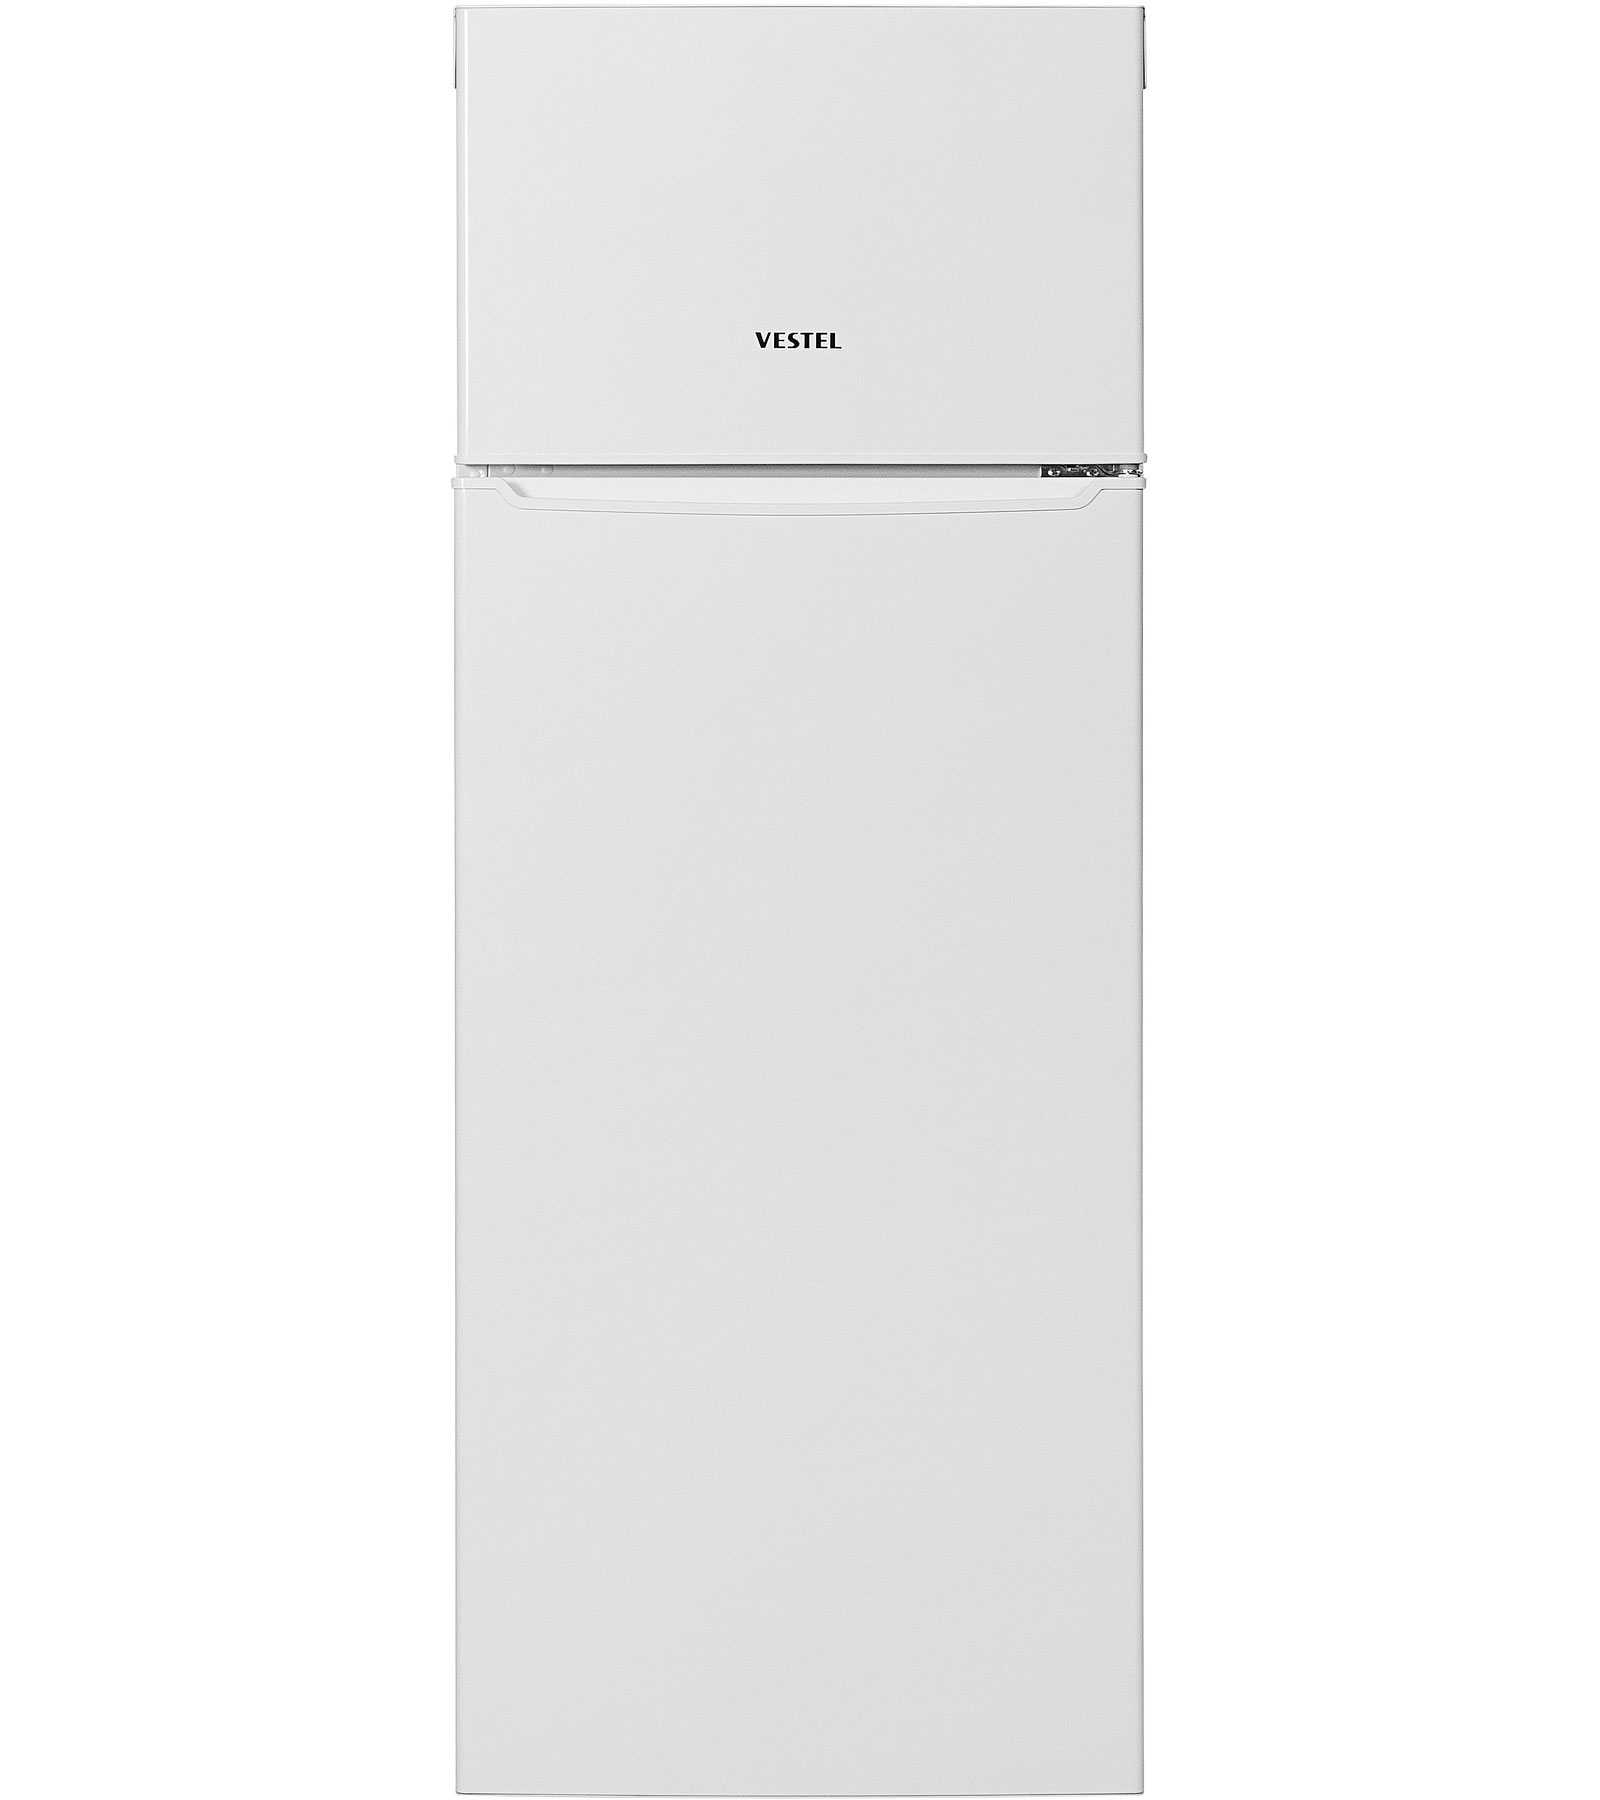 Холодильник vestel vdd 260 vw (белый) (vdd260vw) купить от 13850 руб в новосибирске, сравнить цены, отзывы, видео обзоры и характеристики